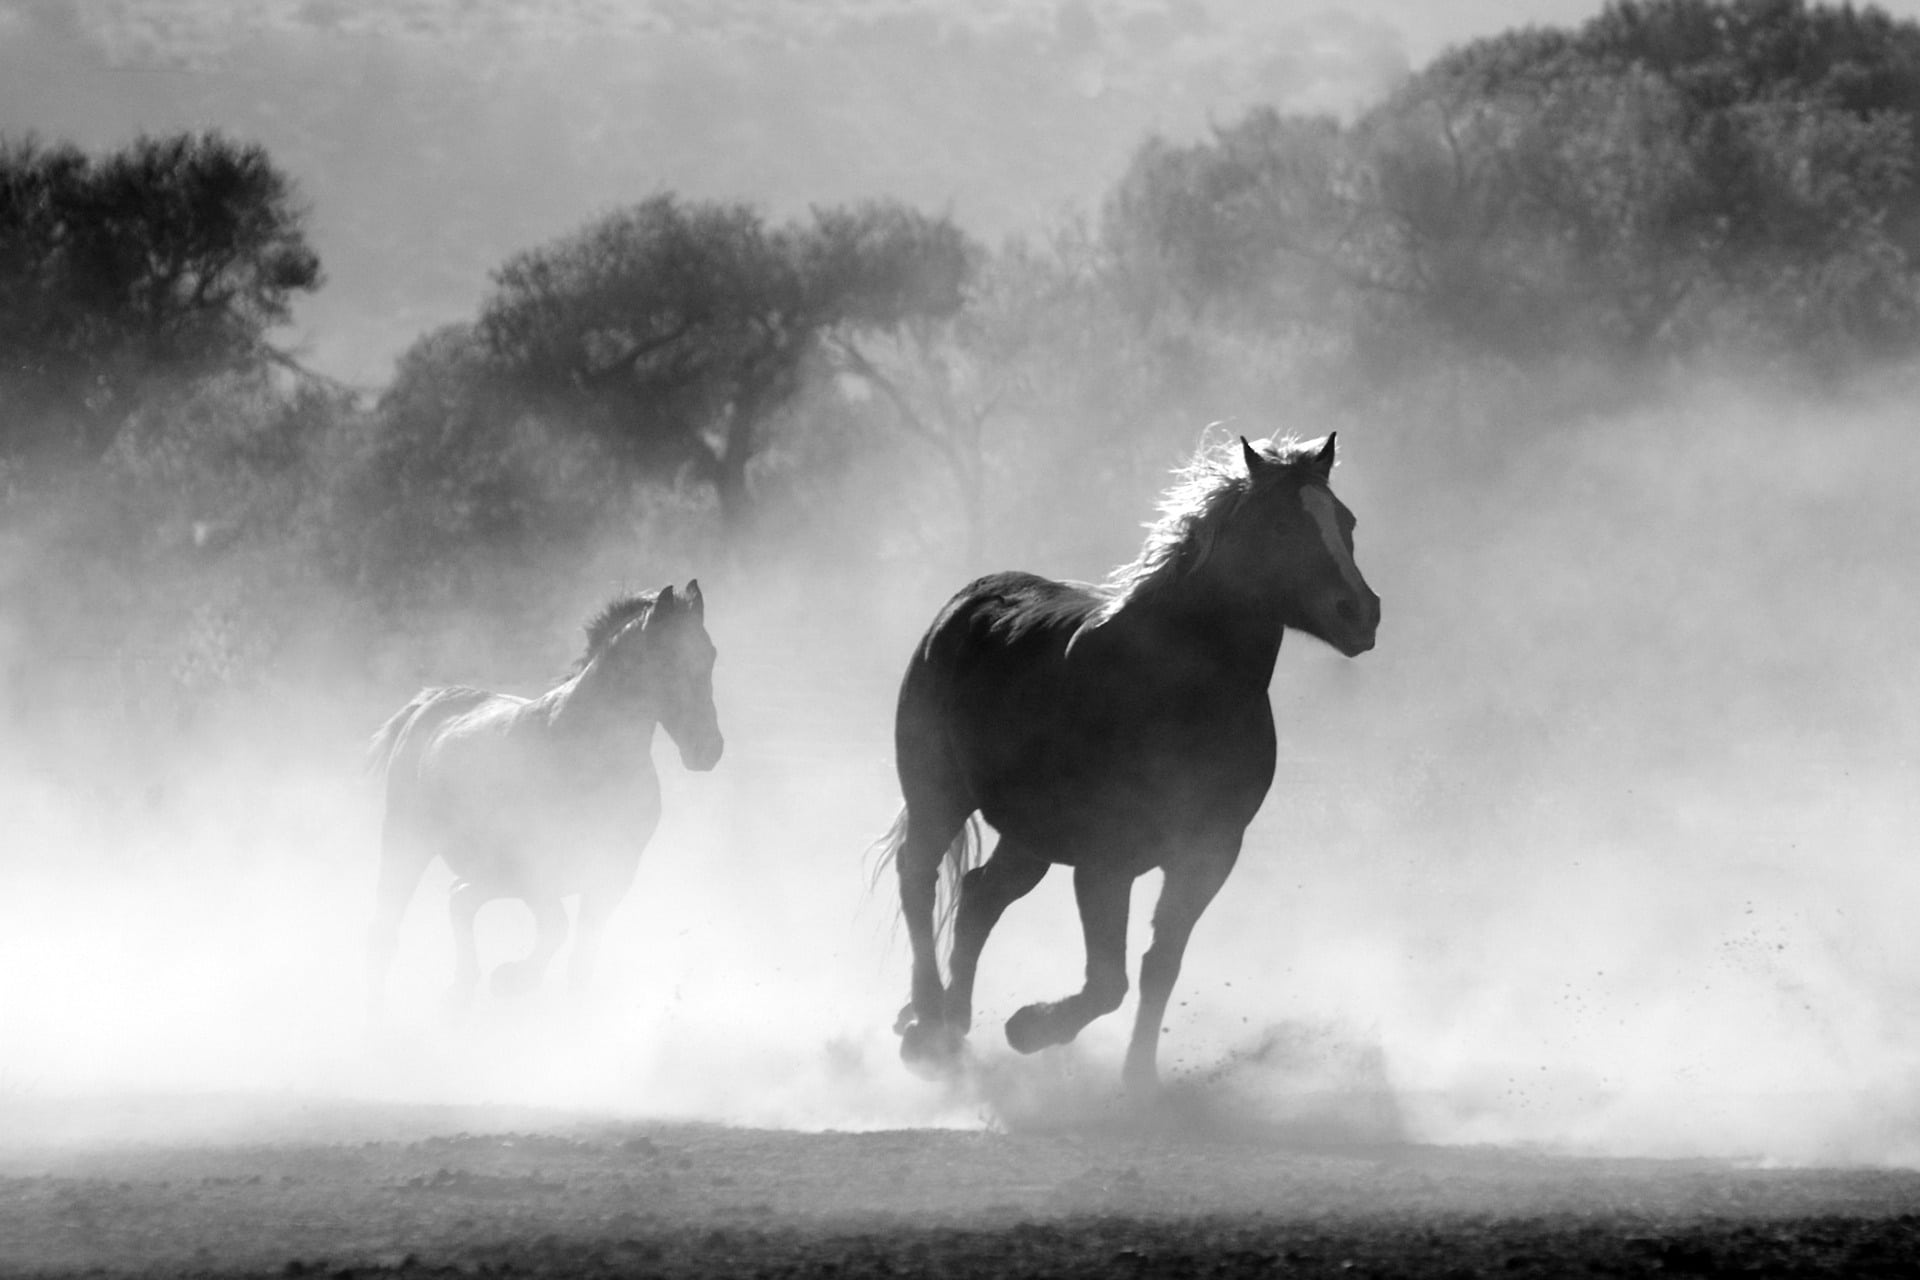 O comportamento do cavalo é um exemplo da complexidade do mundo natural. Mesmo animais que são considerados herbívoros podem se alimentar de carne em situações específicas.